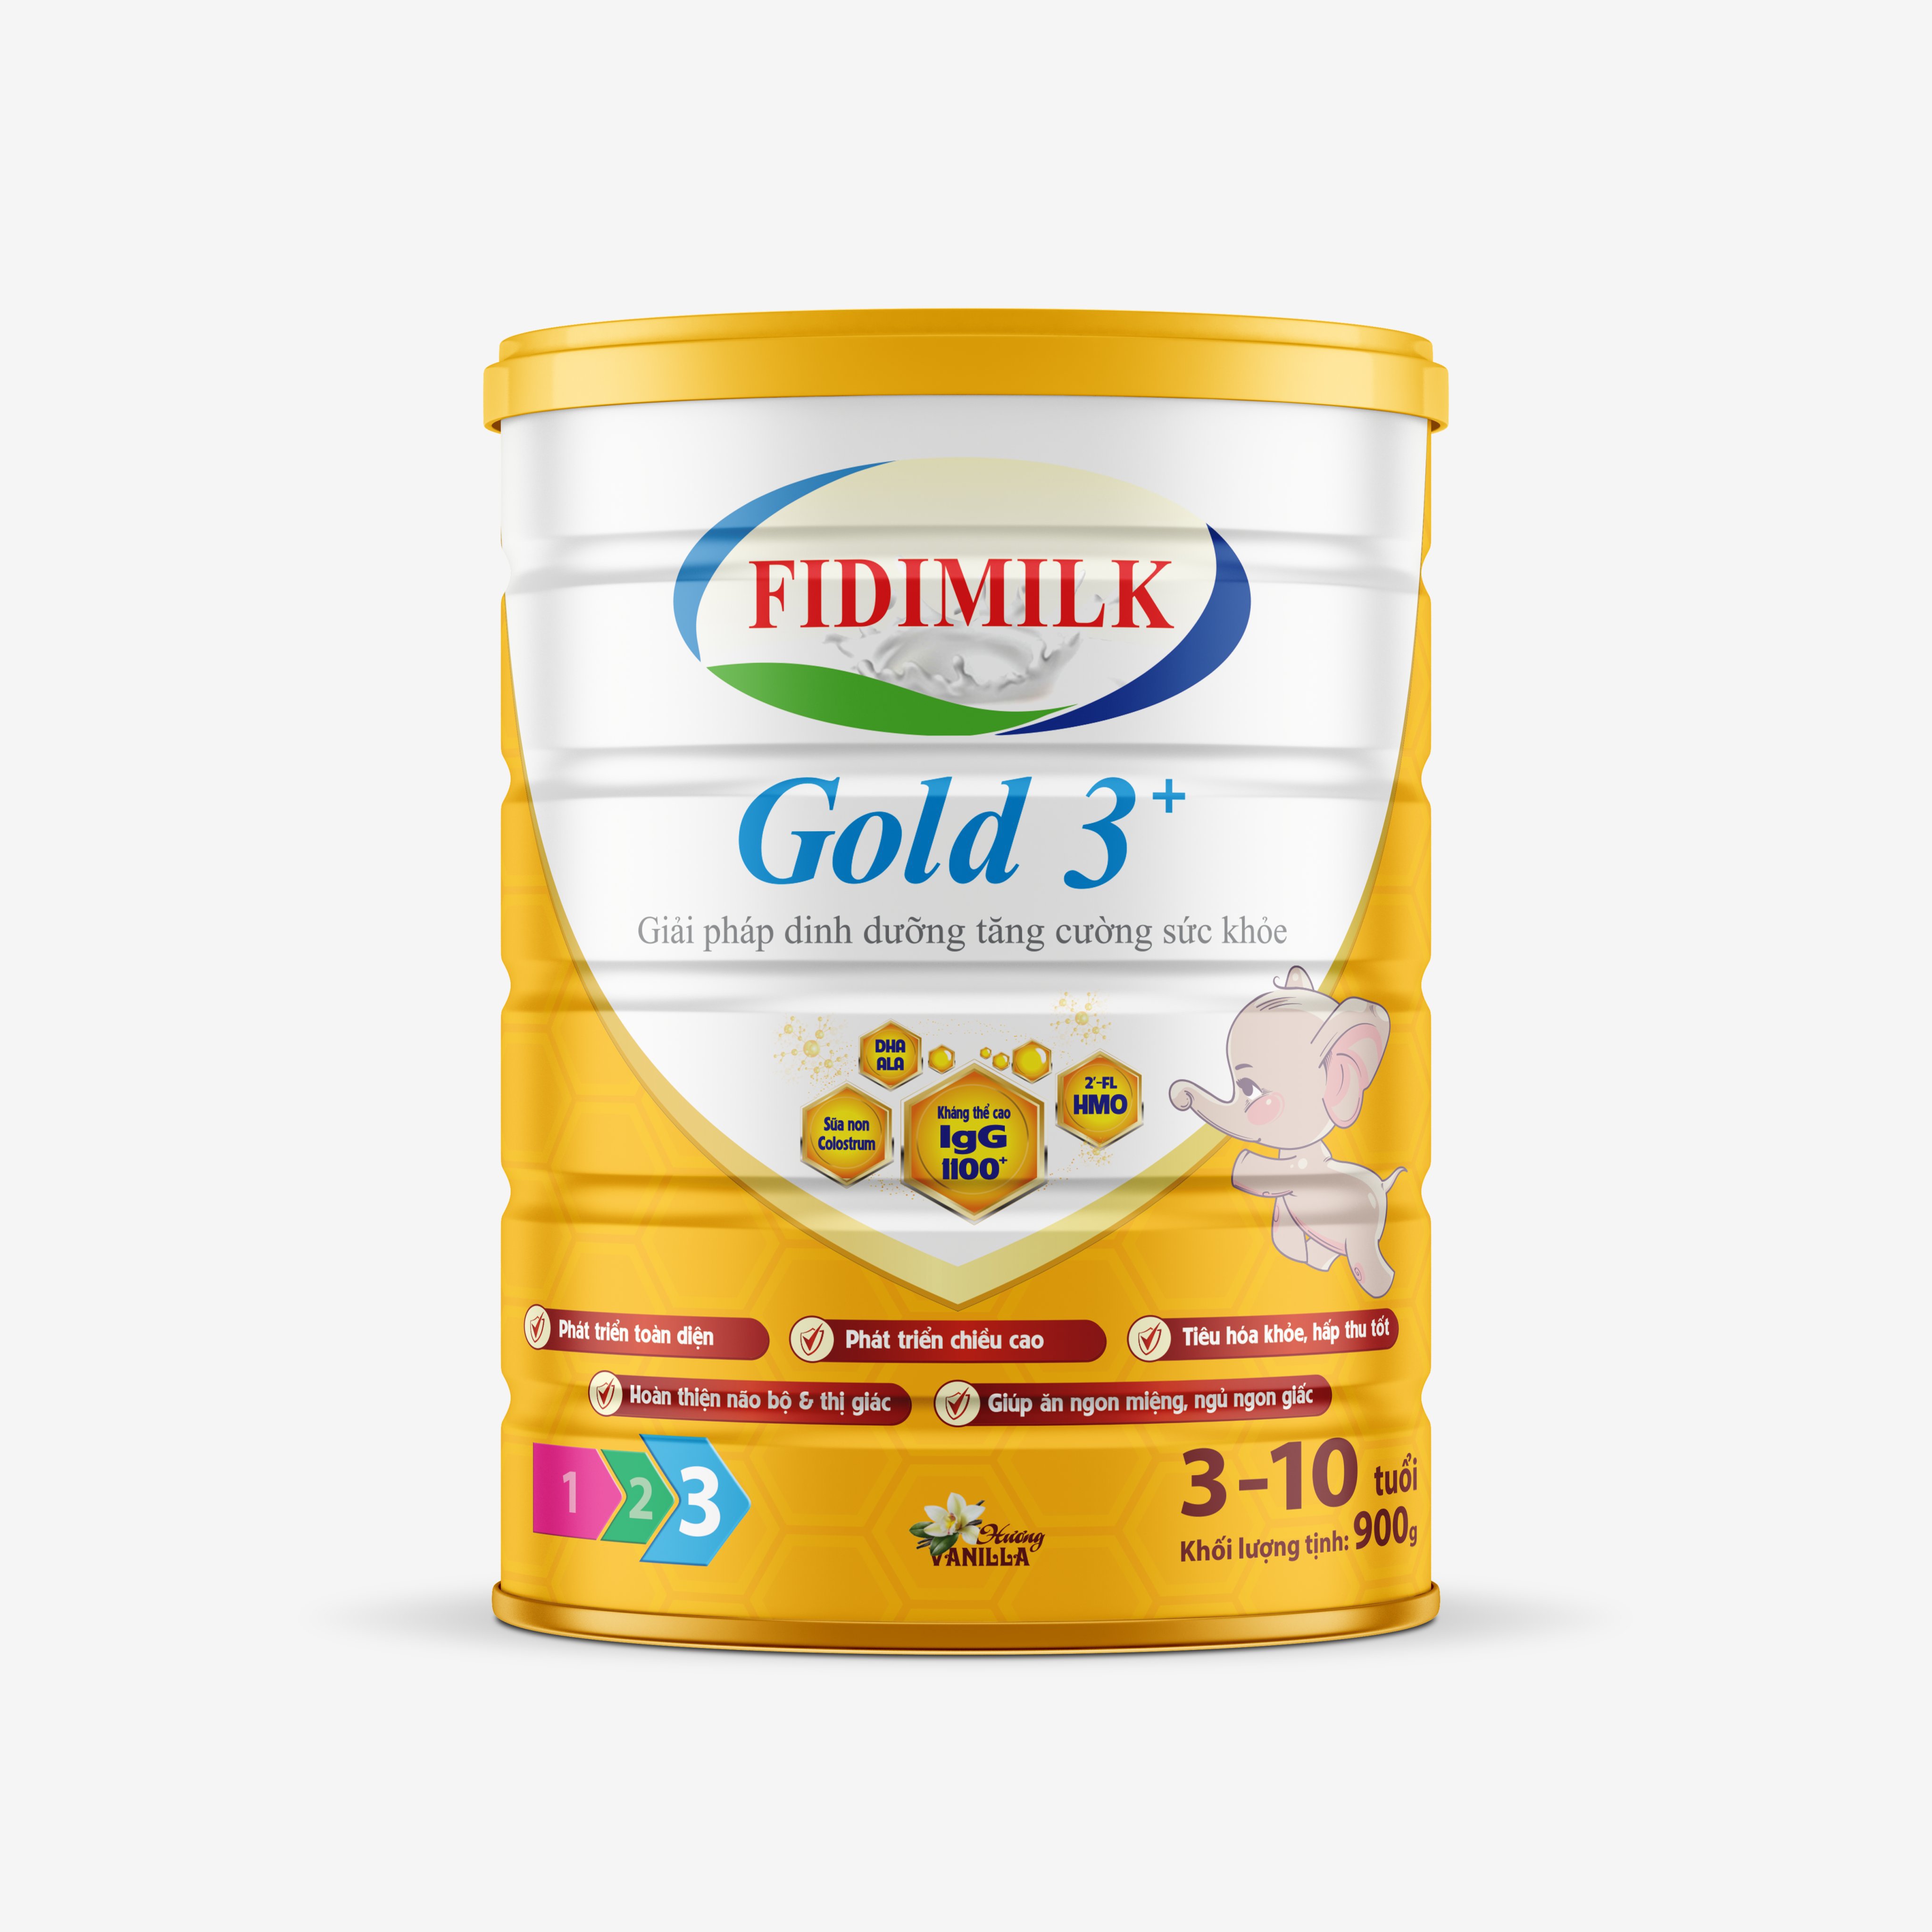 SỮA BỘT FIDIMILK GOLD 3+ 900G